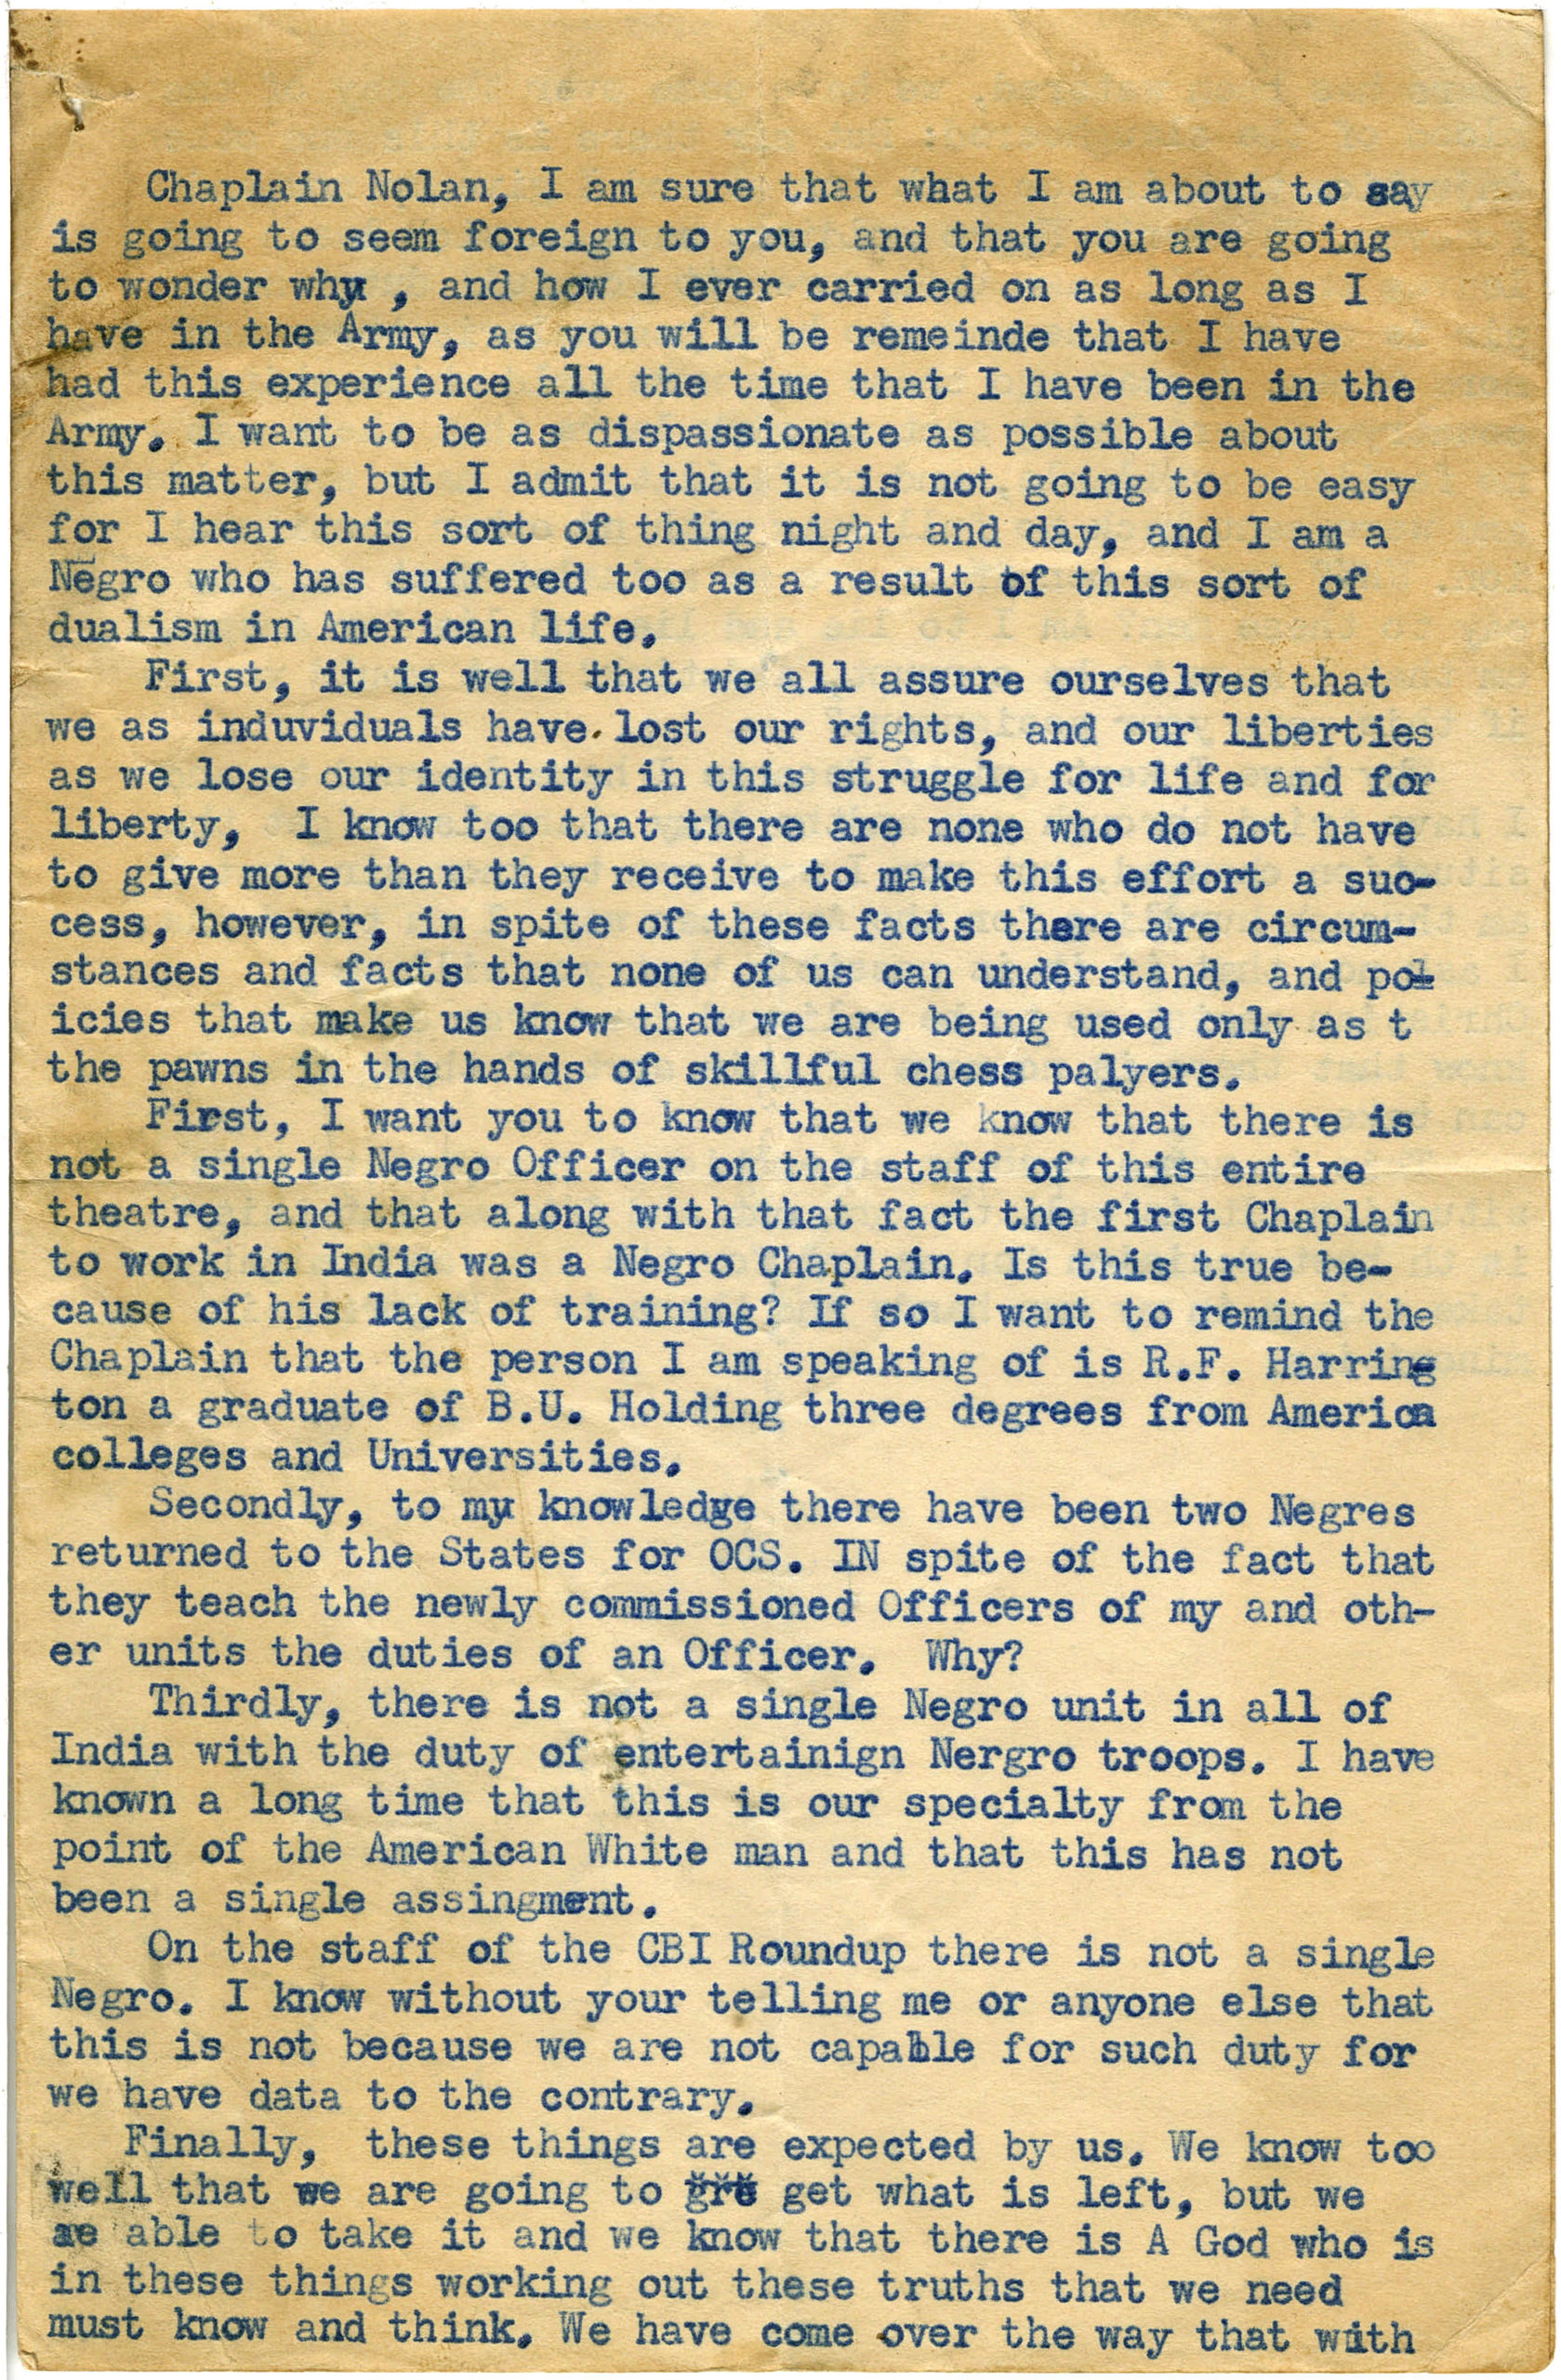 "Correspondence to Chaplain Nolan , Robert E. Penn, circa 1945-1946, Robert E. Penn collection"